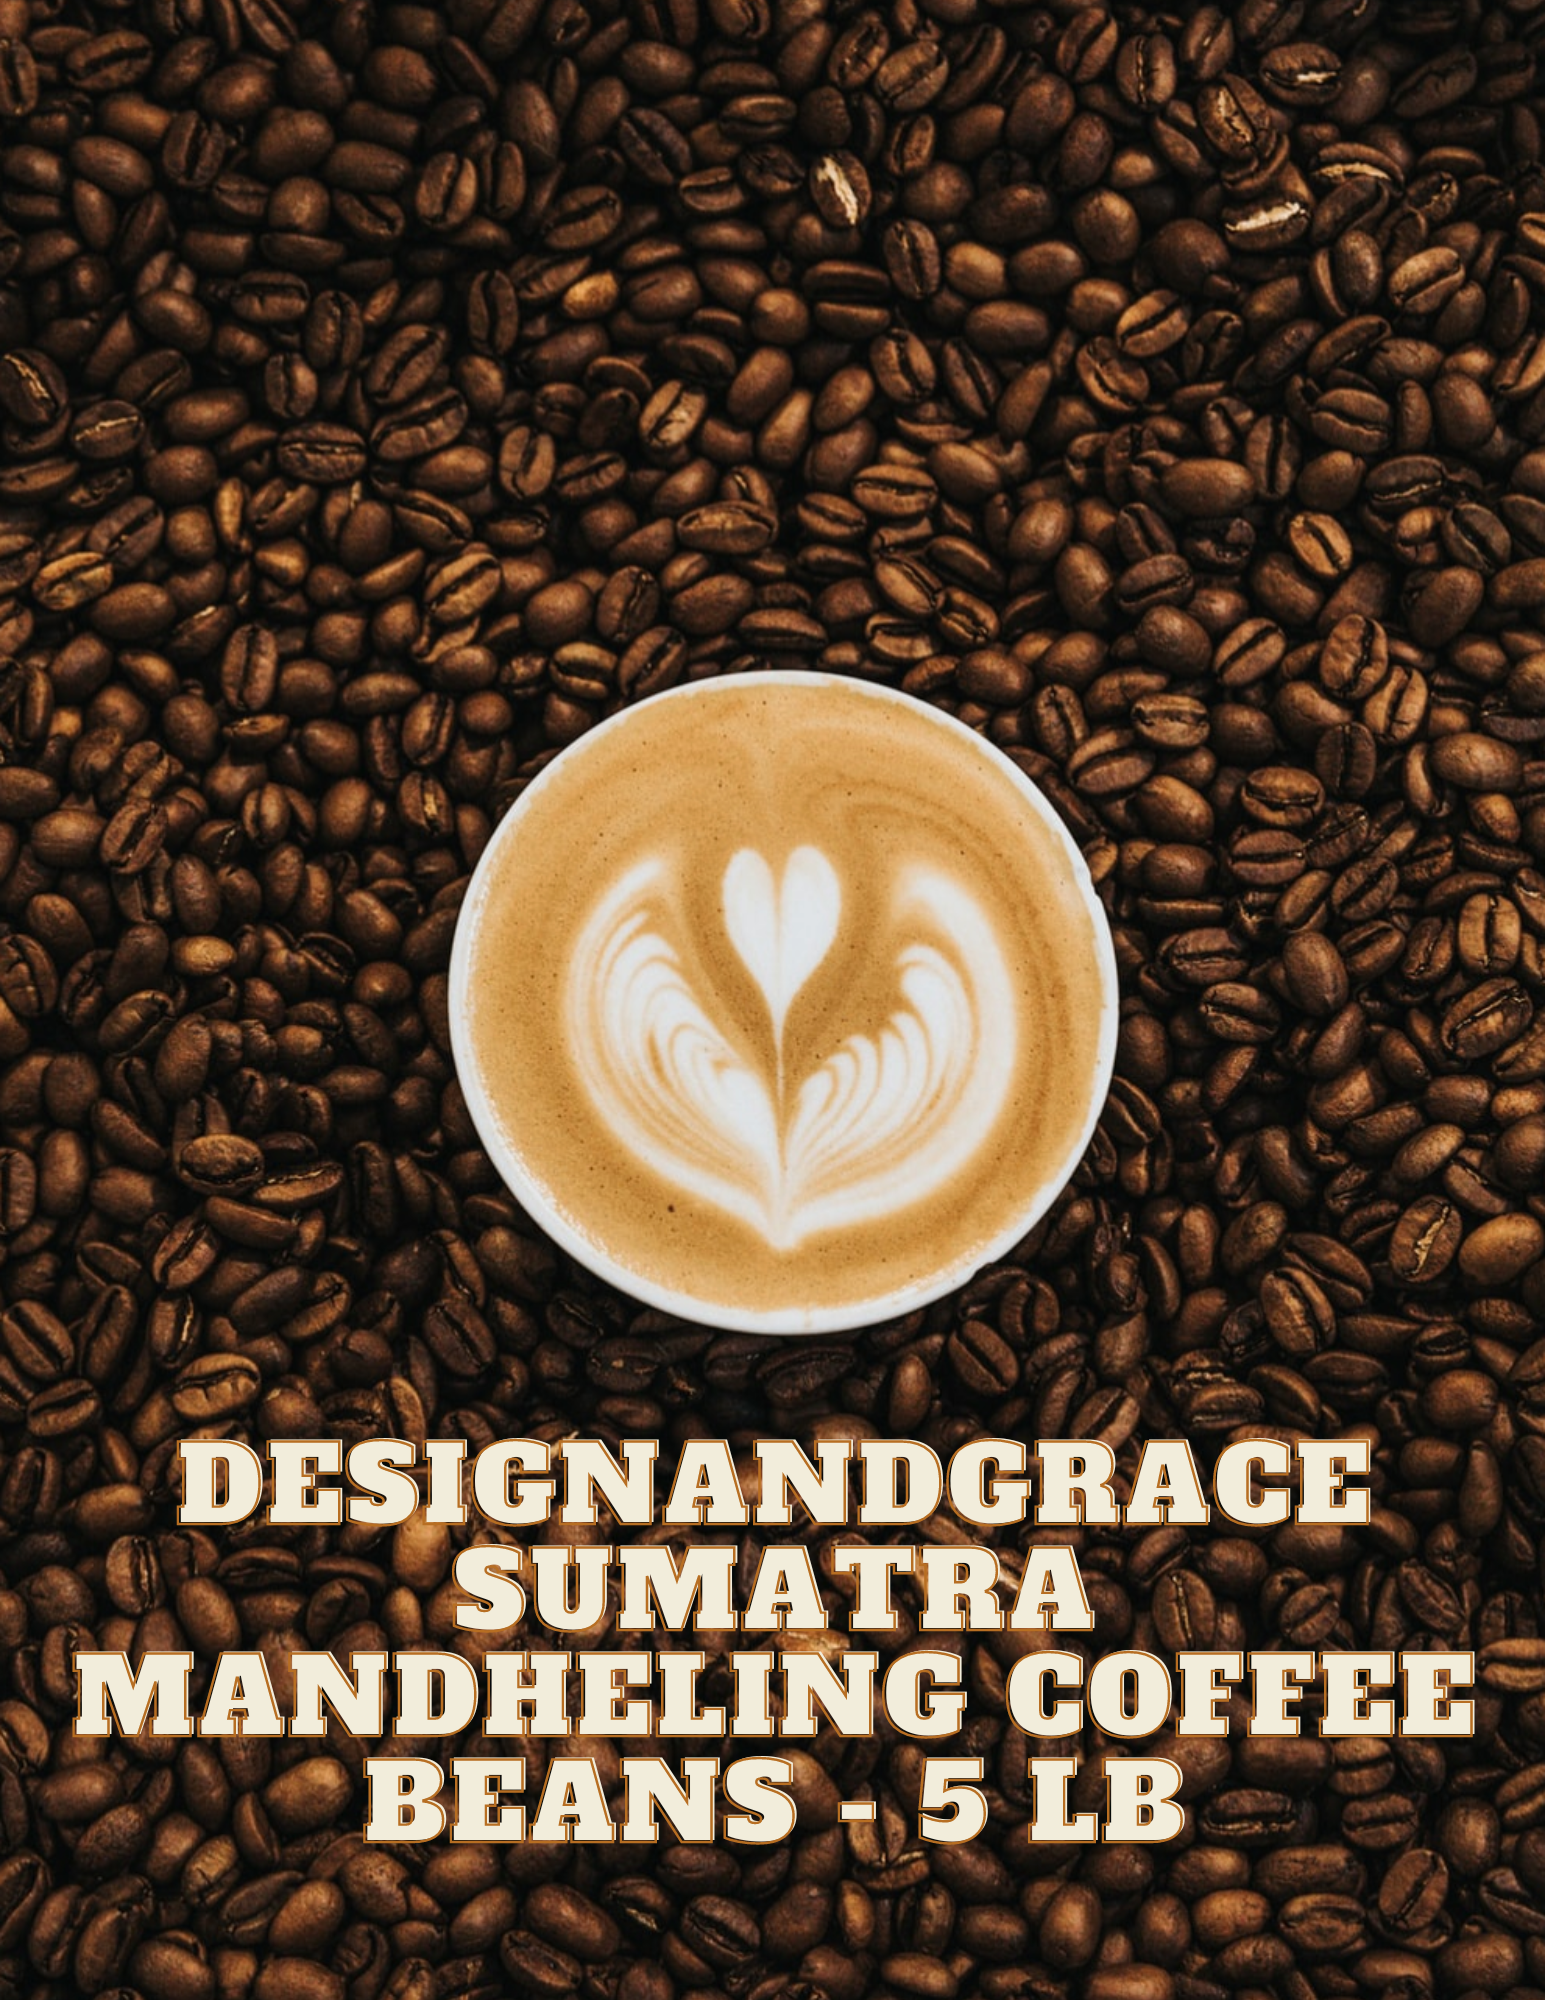 DesignandGrace Sumatra Mandheling Coffee Beans - 5 lb